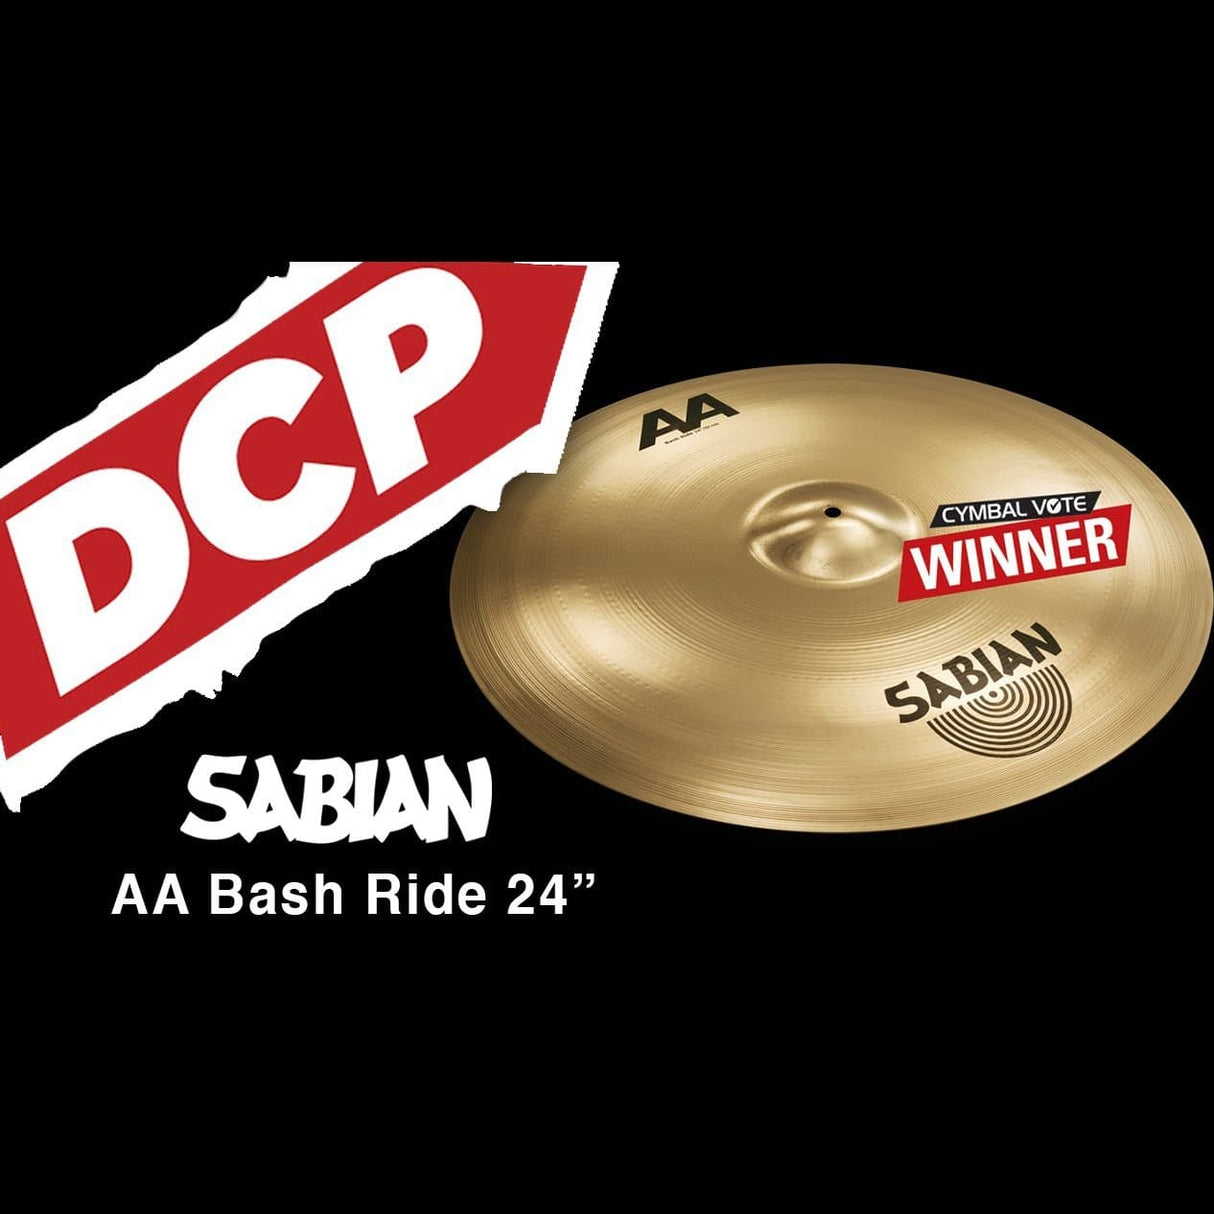 Sabian AA Bash Ride Cymbal 24"